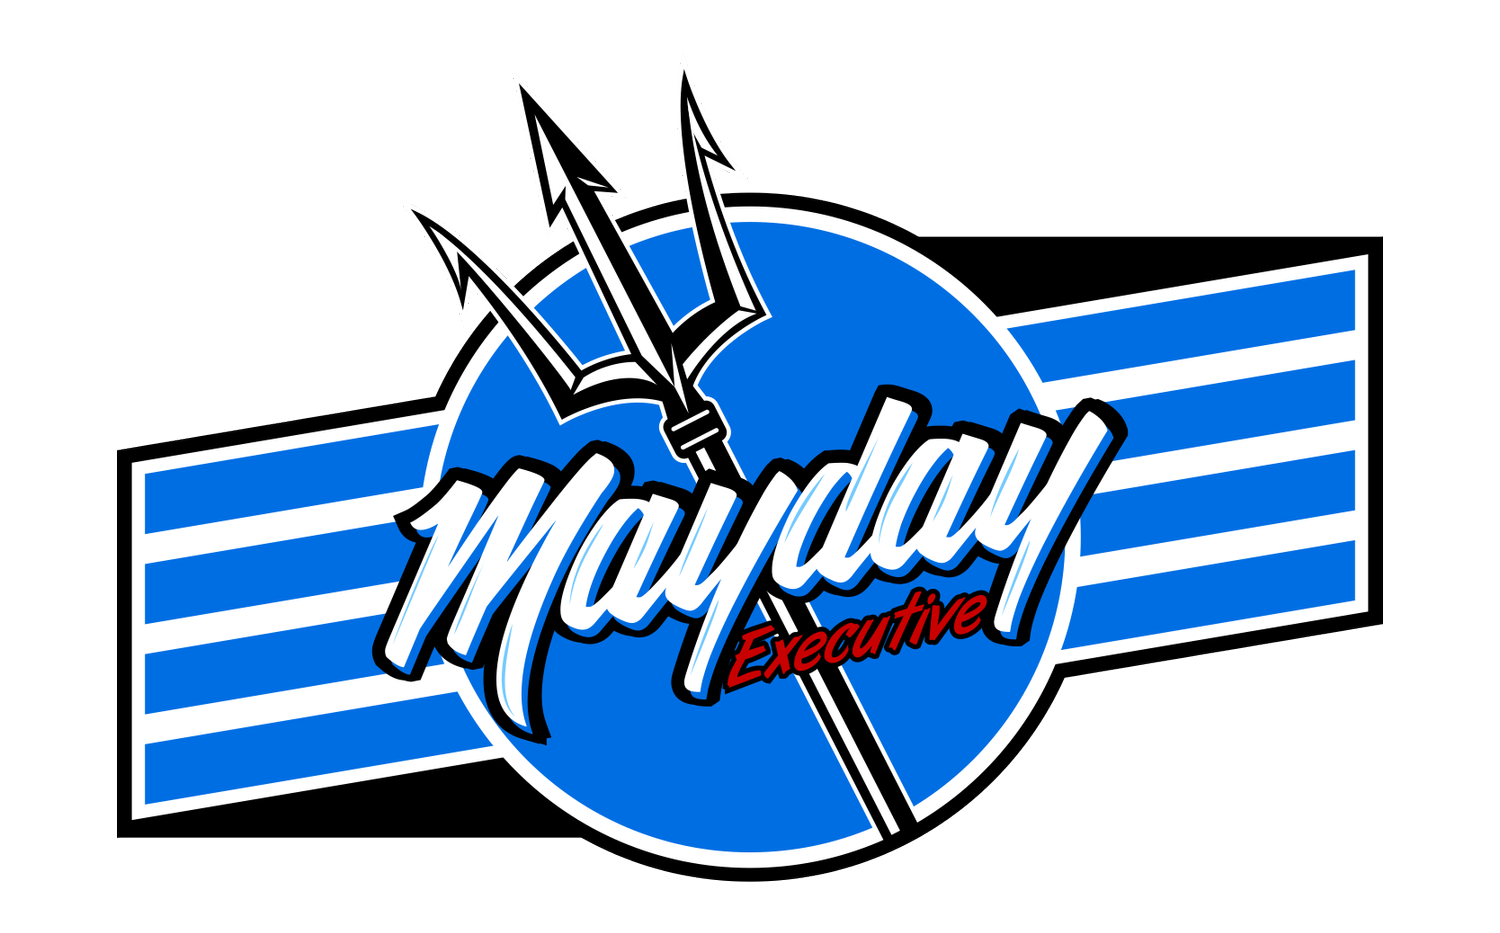 Mayday Executive